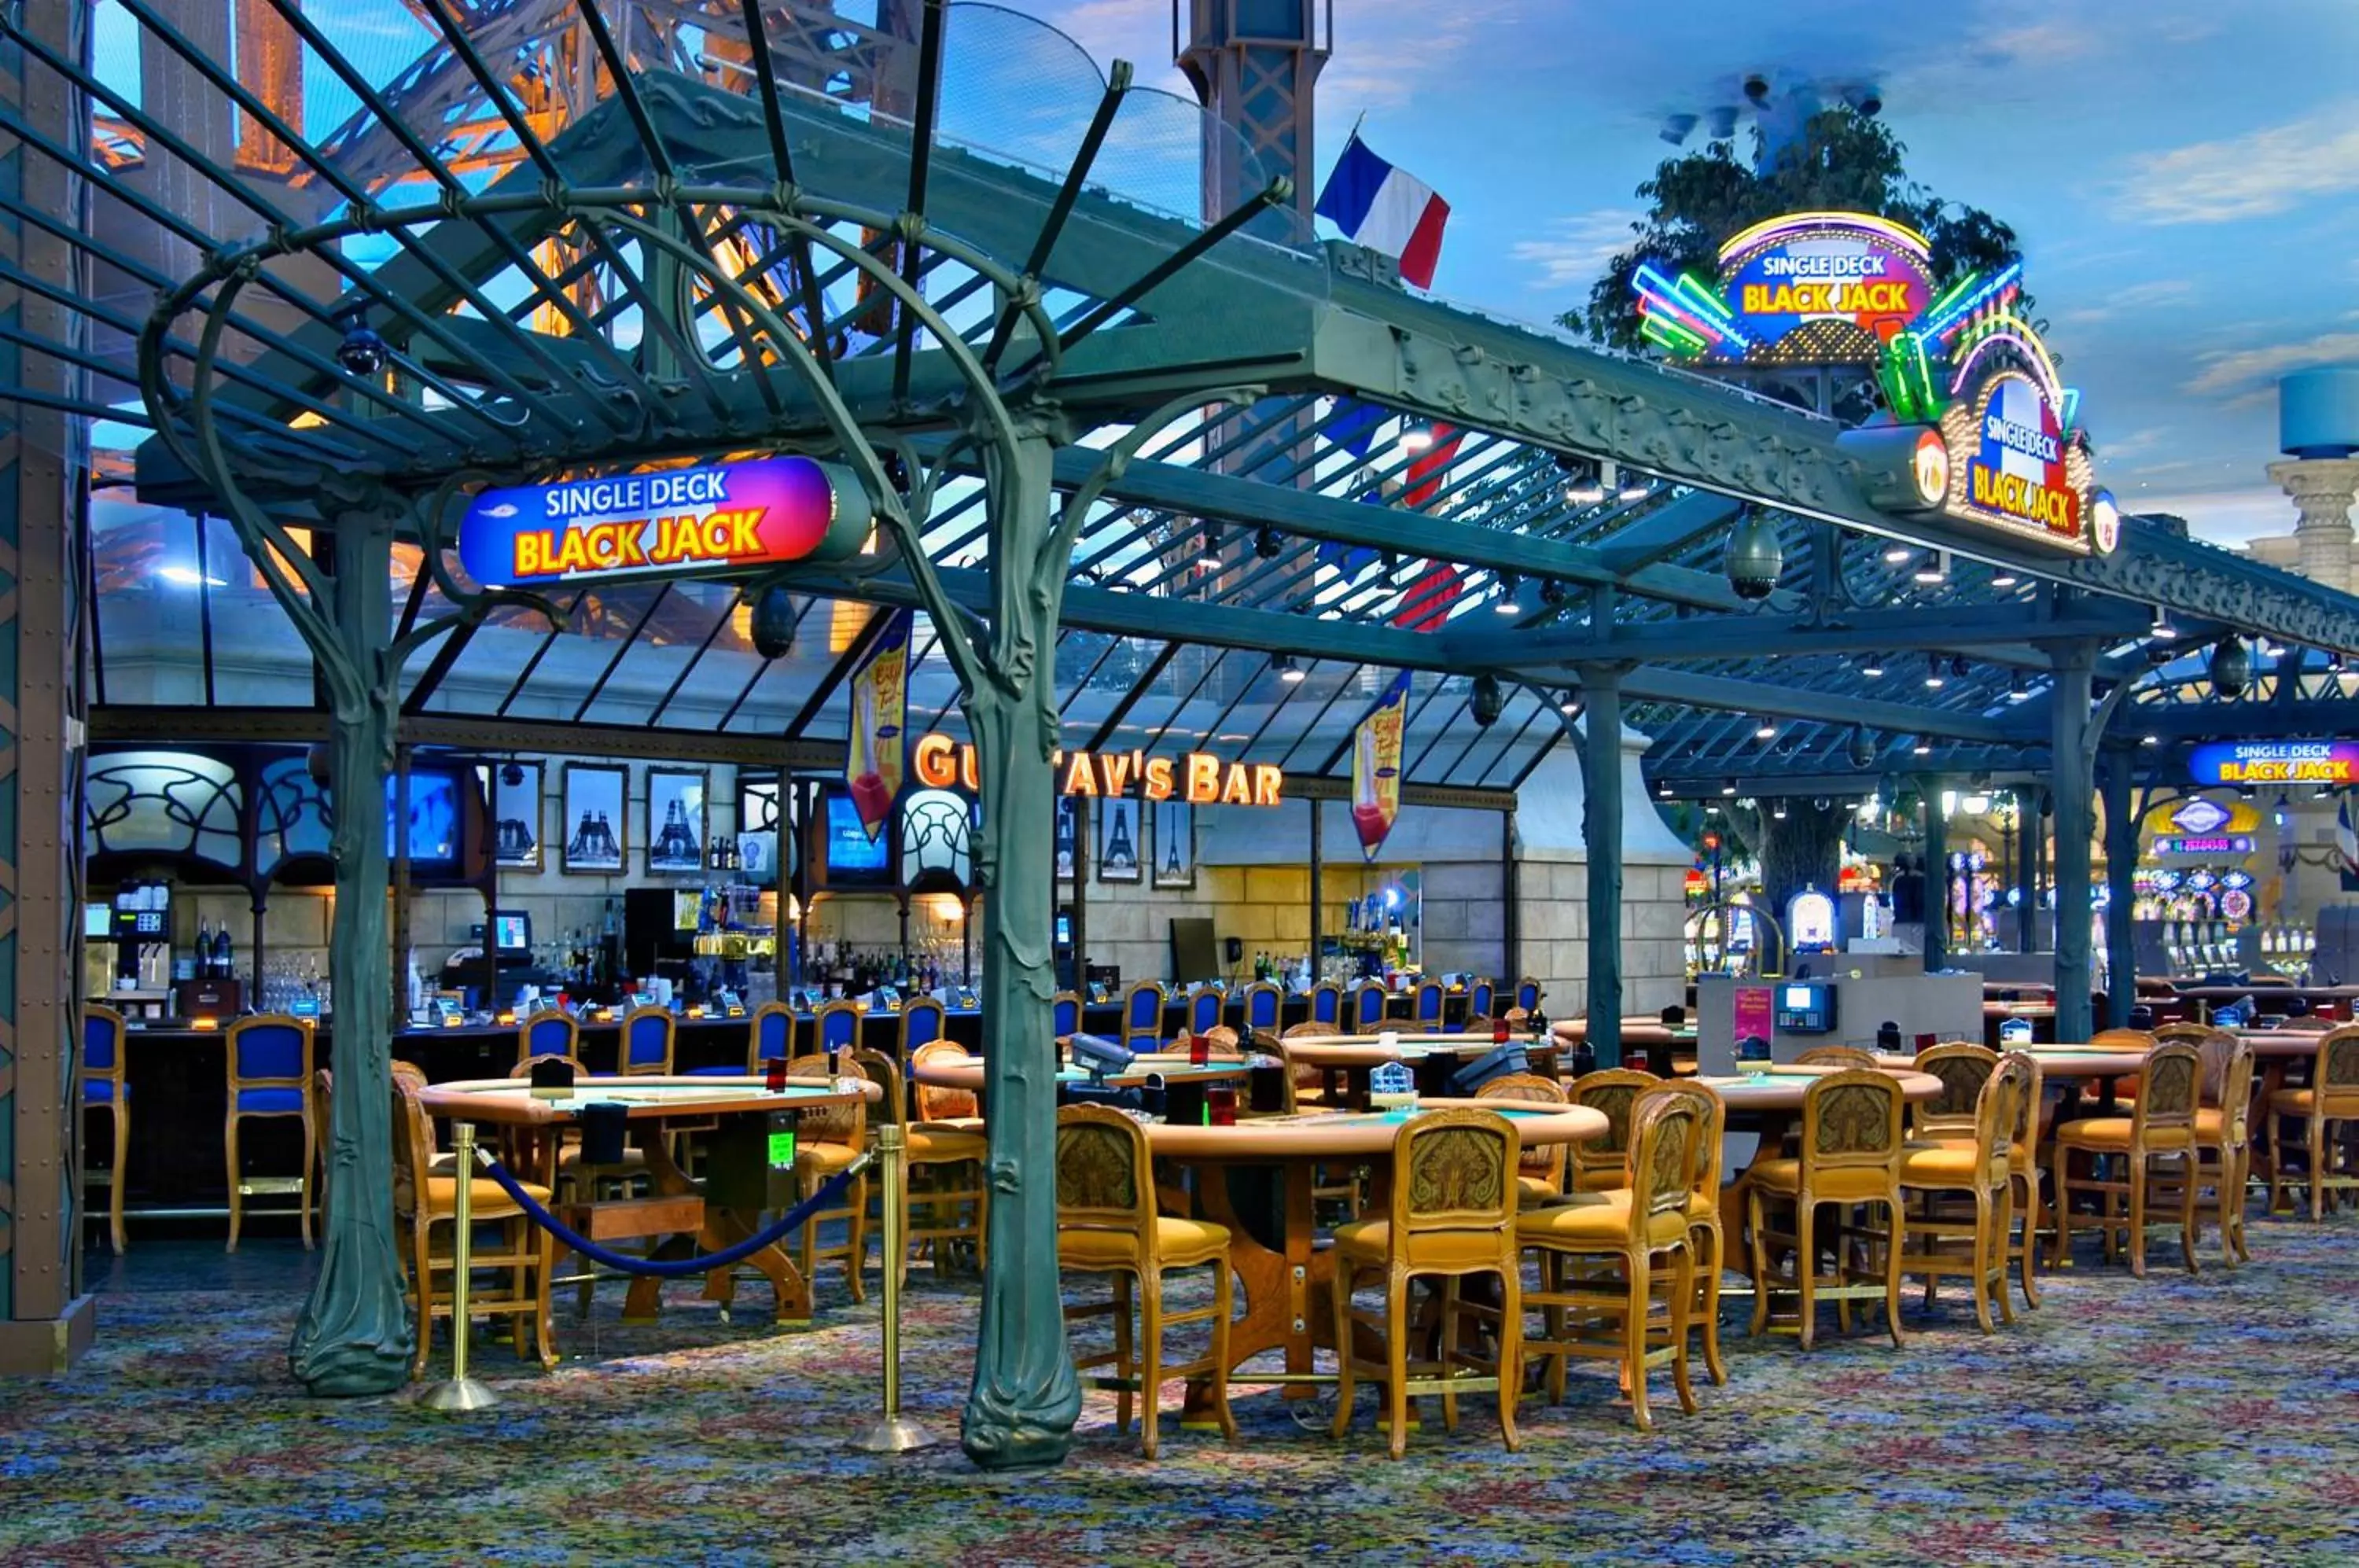 Area and facilities, Restaurant/Places to Eat in Paris Las Vegas Hotel & Casino